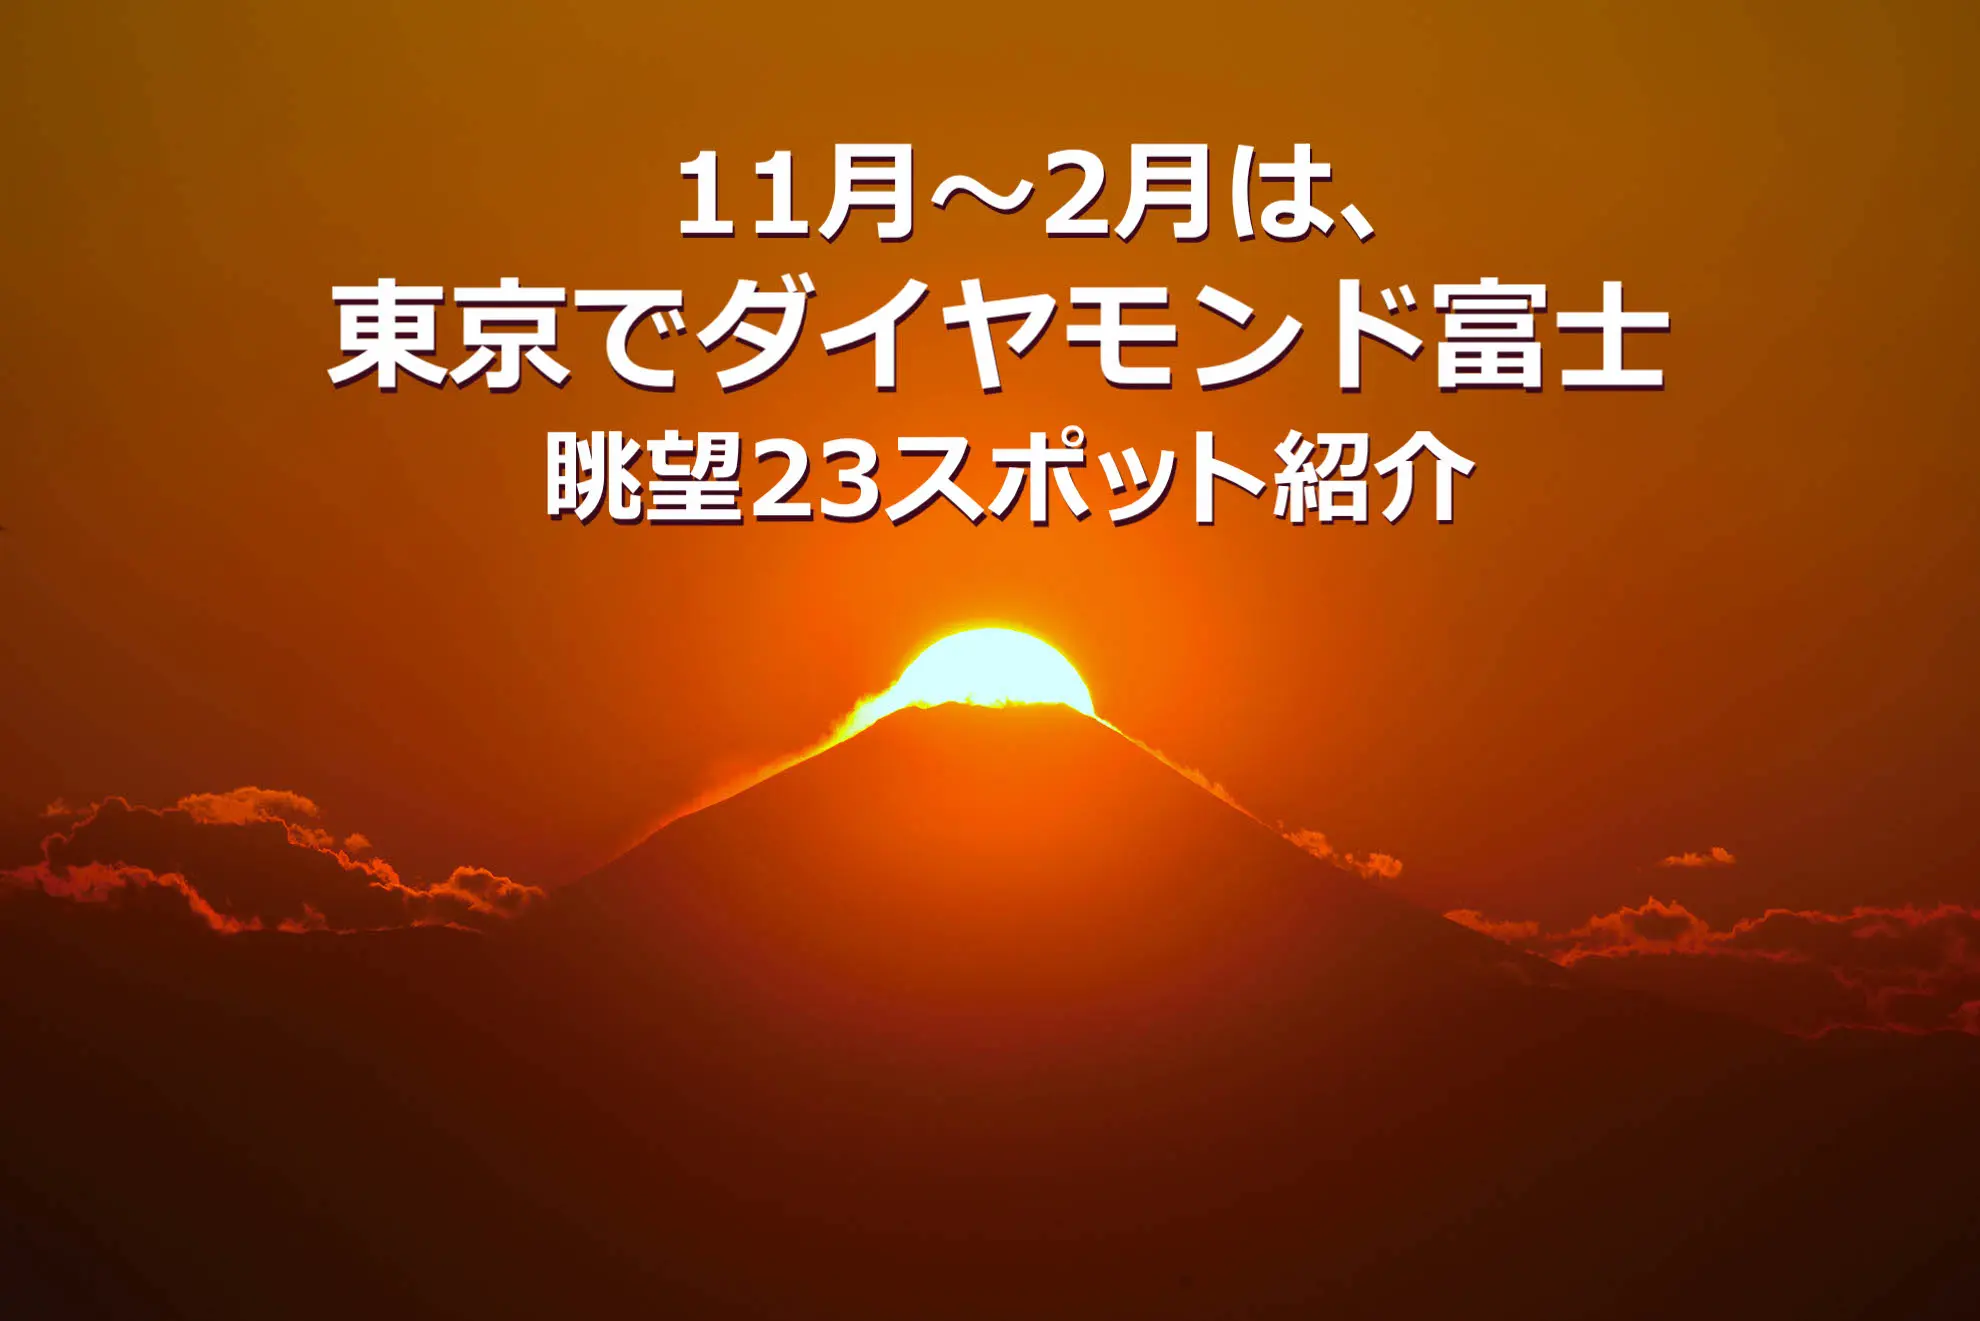 11月 2月は 東京でダイヤモンド富士 眺望23スポット紹介 東京とりっぷ